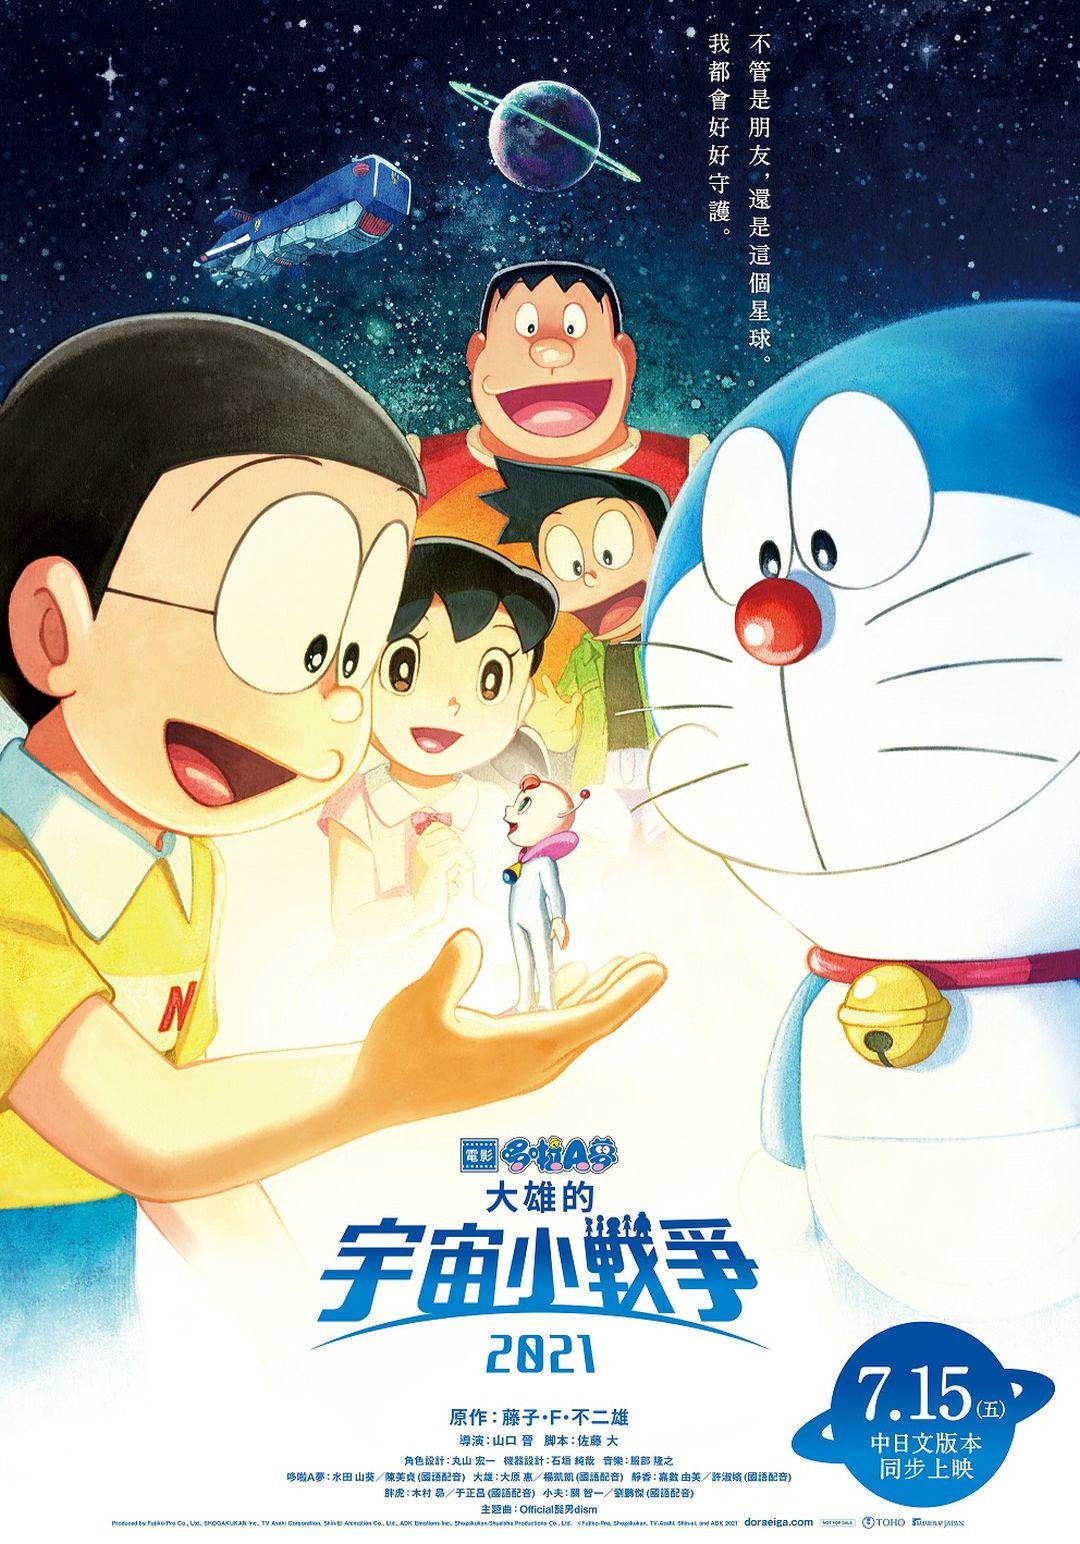 電影【哆啦A夢：大雄的宇宙小戰爭2021】Doraemon The Movie: Nobita's Little Star Wars 2021　| ドラえもん: のび太 の 宇宙小戦争 2021 影片資訊